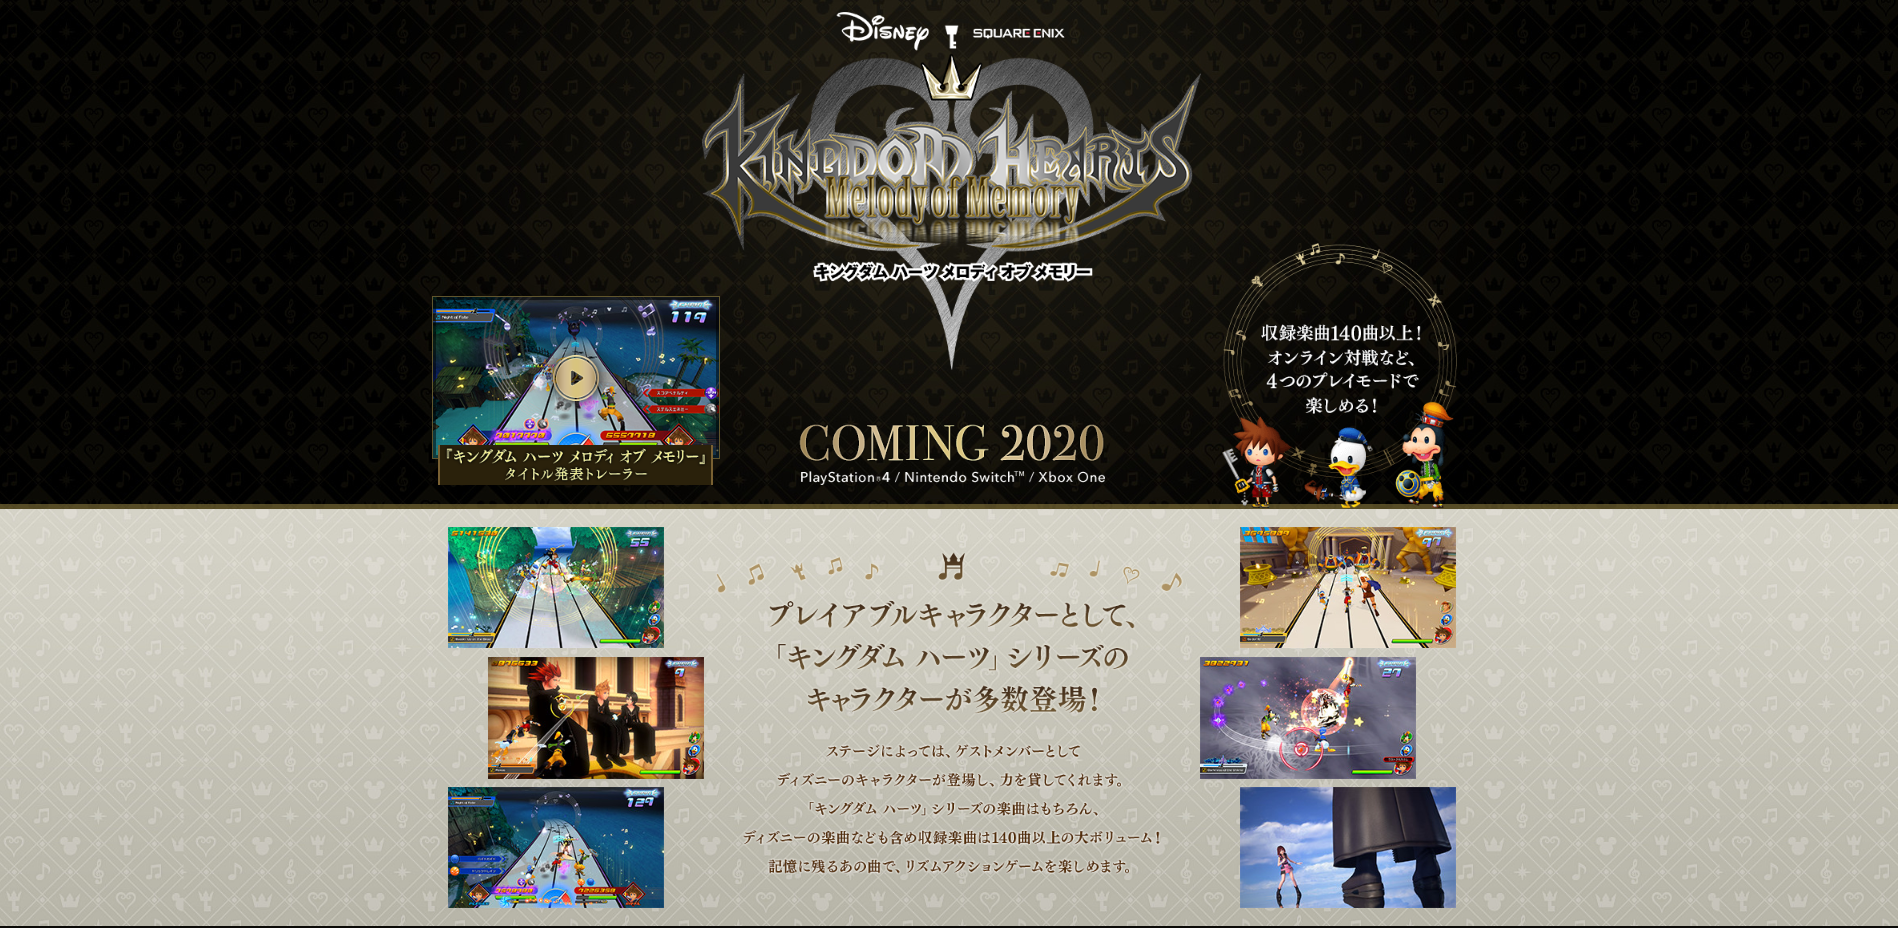 Kingdom Hearts Melody of Memory - PS4, PlayStation 4